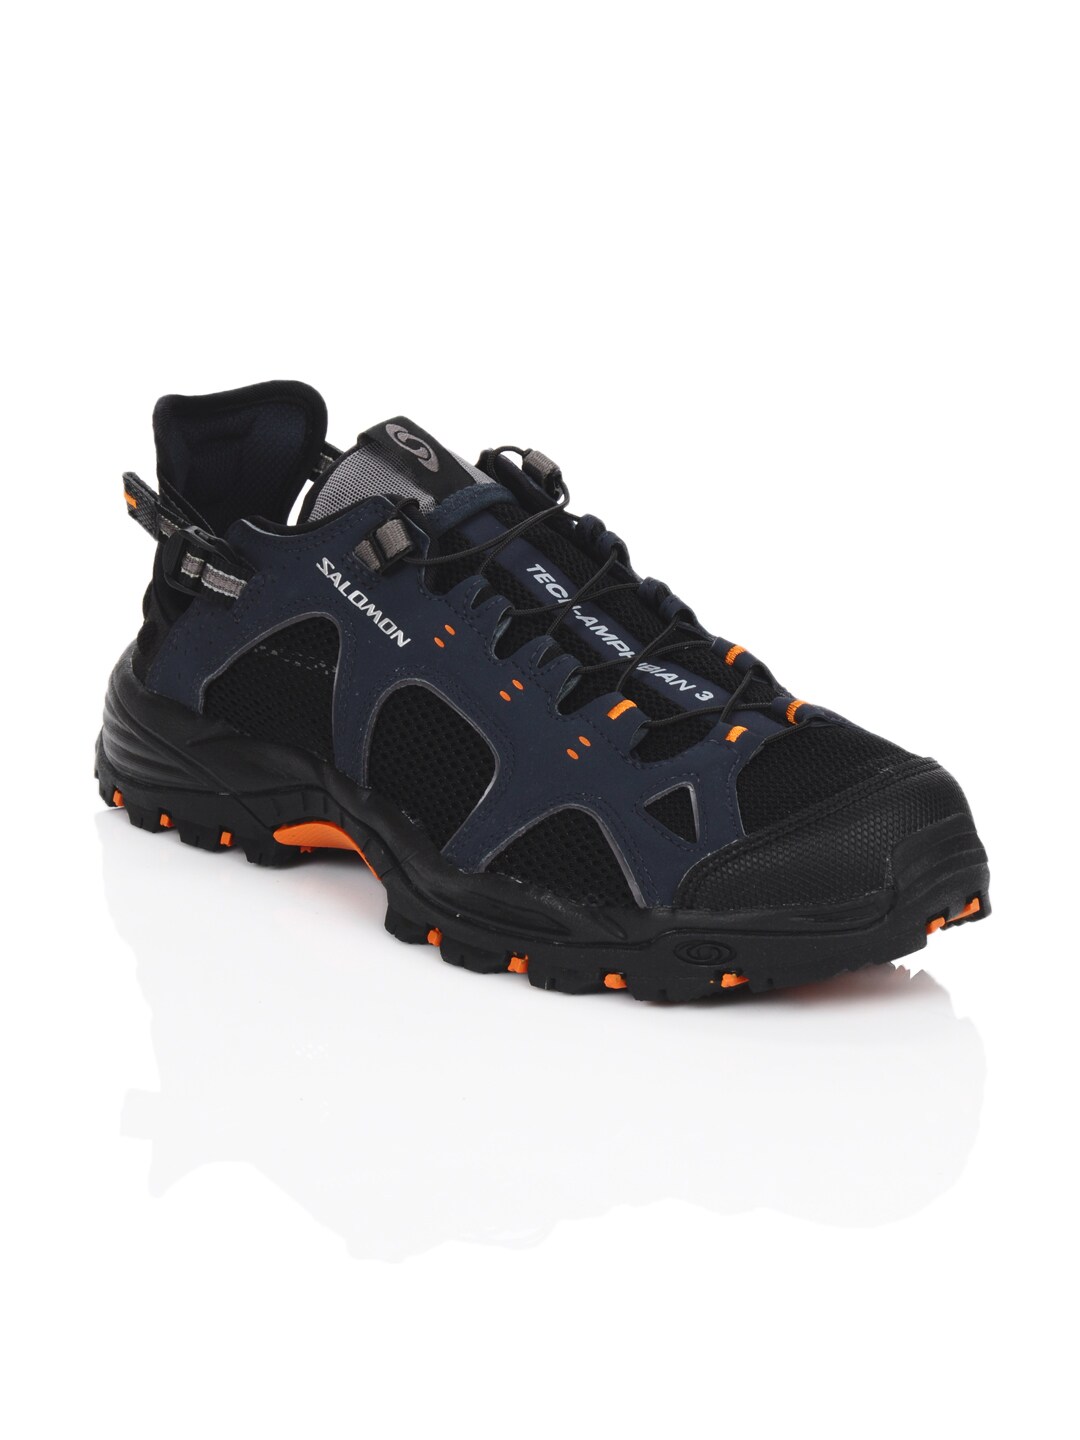 Salomon Men Techamphibian 3 Black Sports Shoes